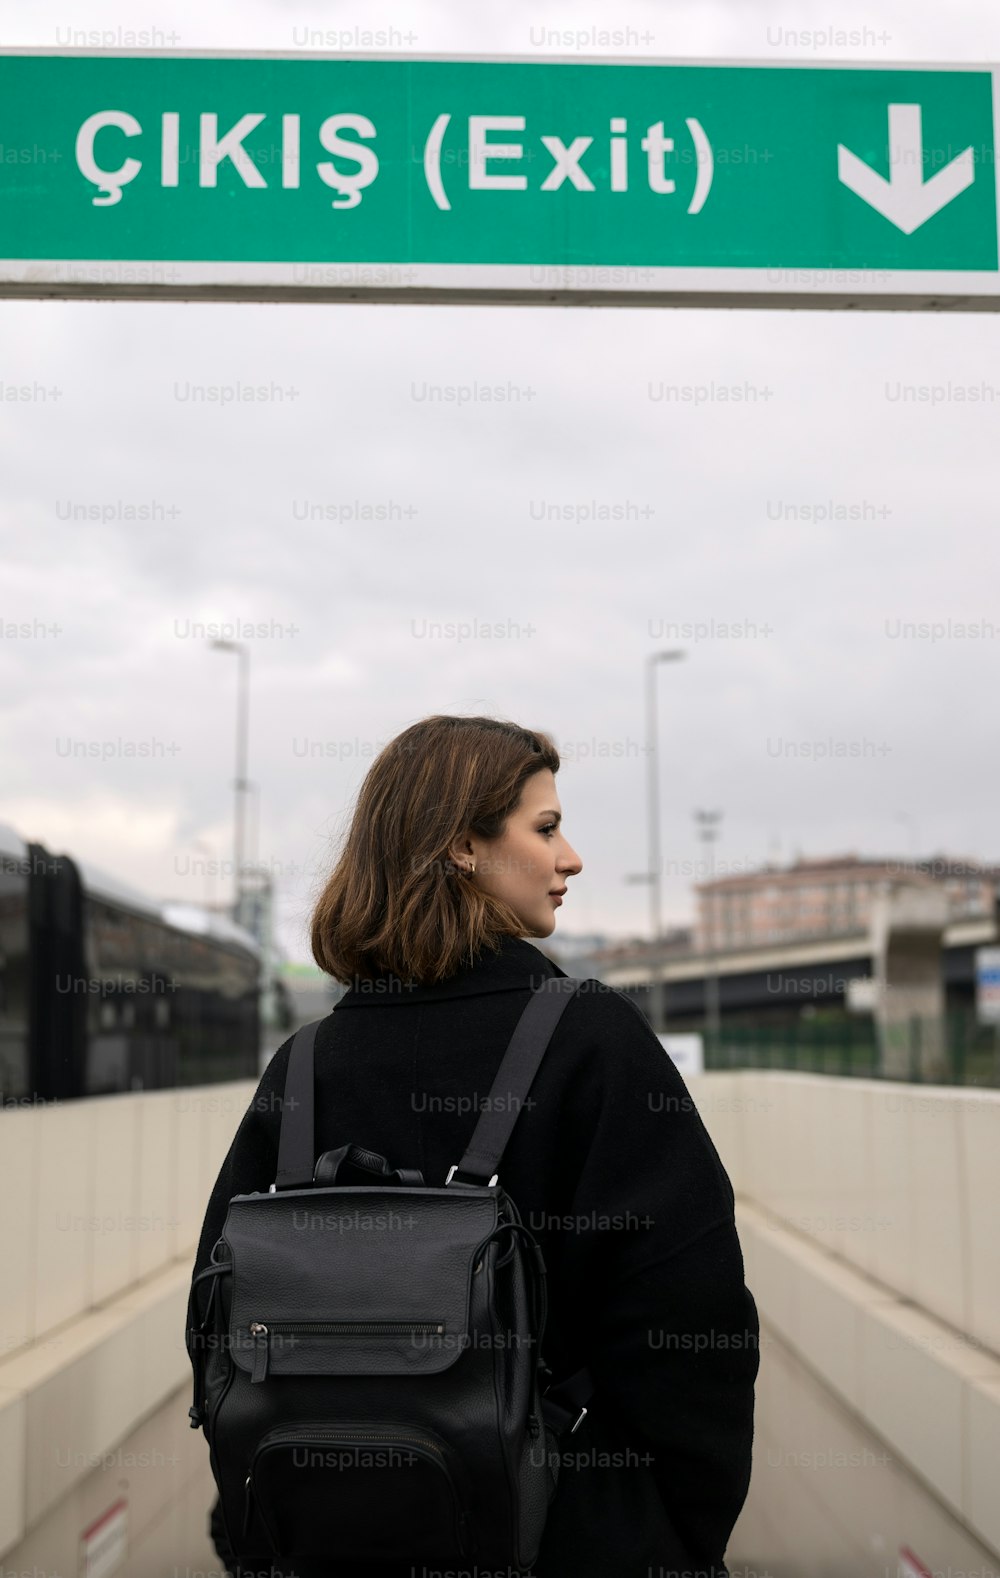 Une femme avec un sac à dos se tient sous un panneau